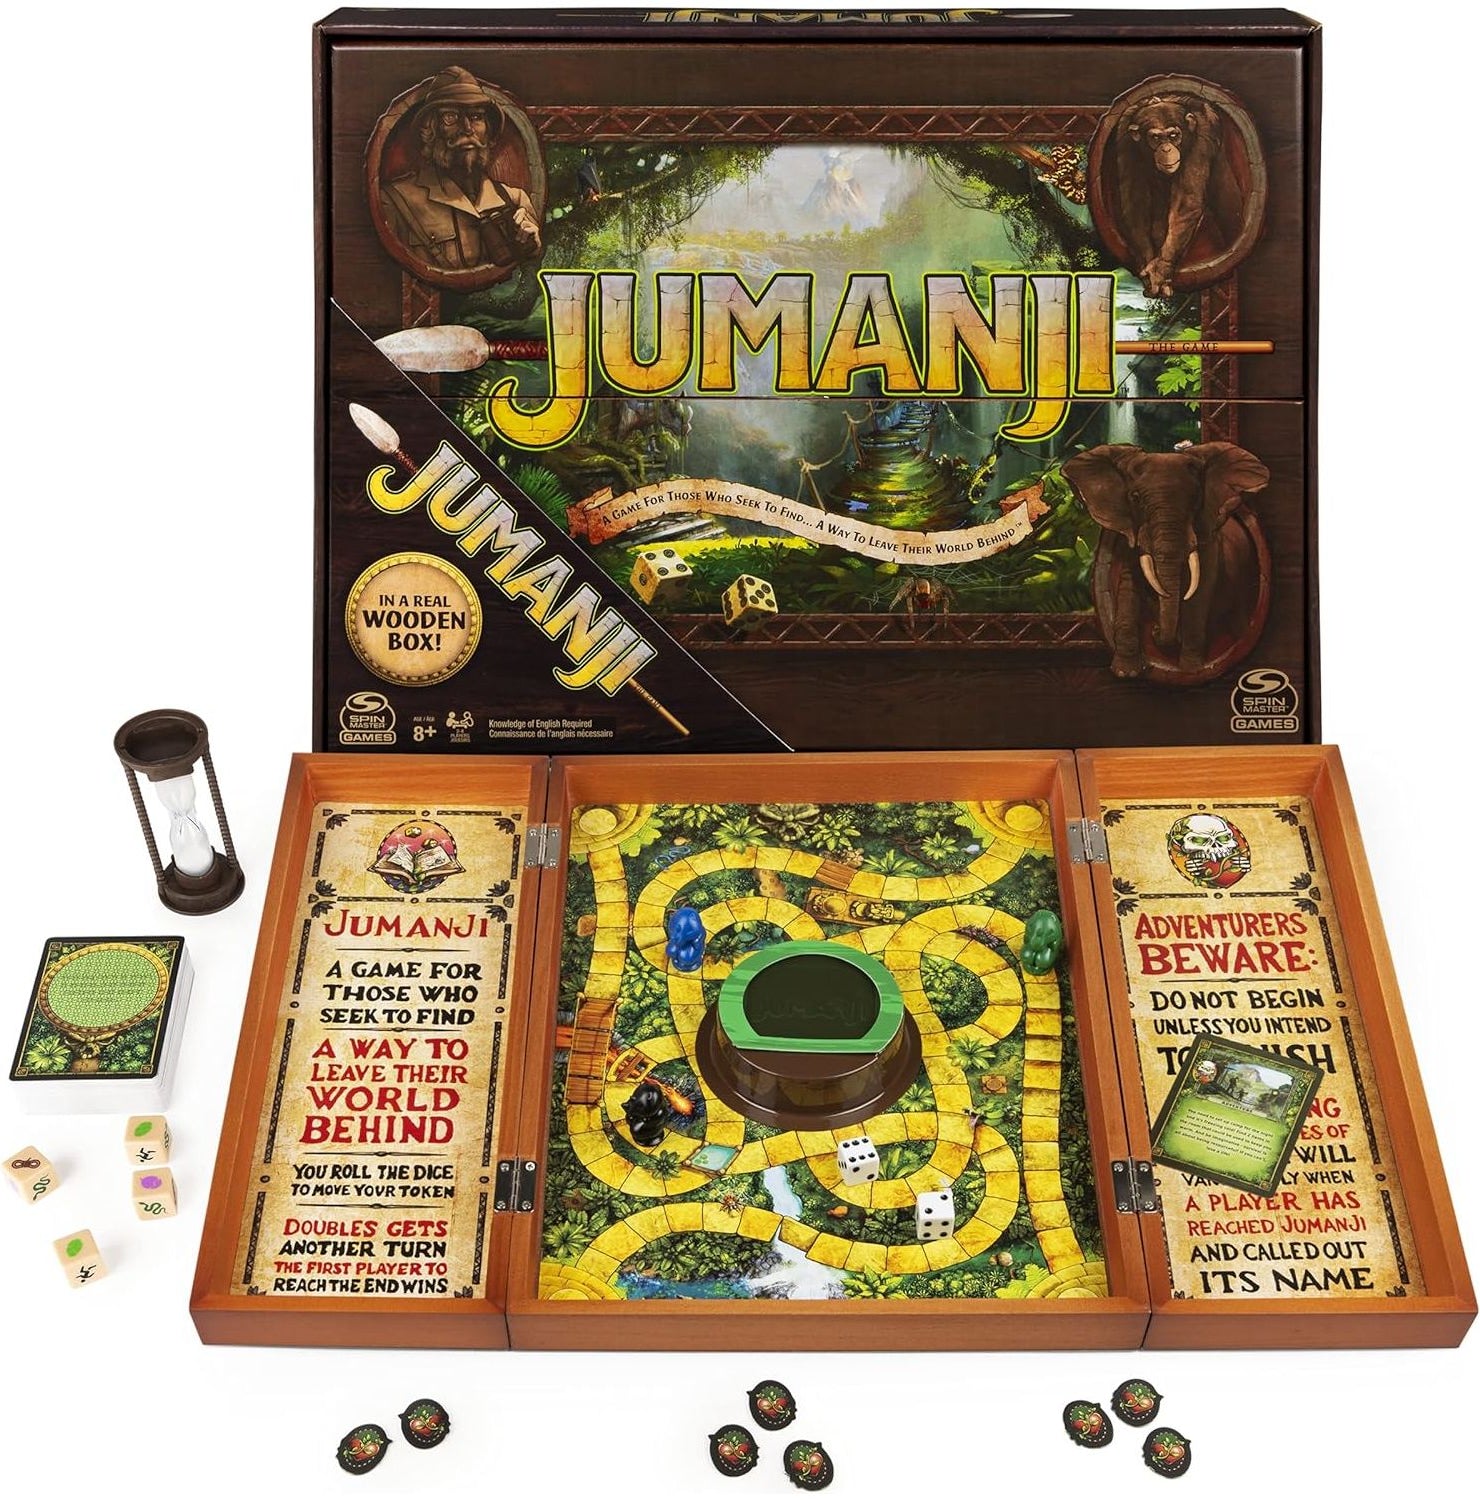 لعبة سبين ماستر جيمز جومانجي إصدار صندوق خشبي حقيقي من لعبة المغامرة الكلاسيكية